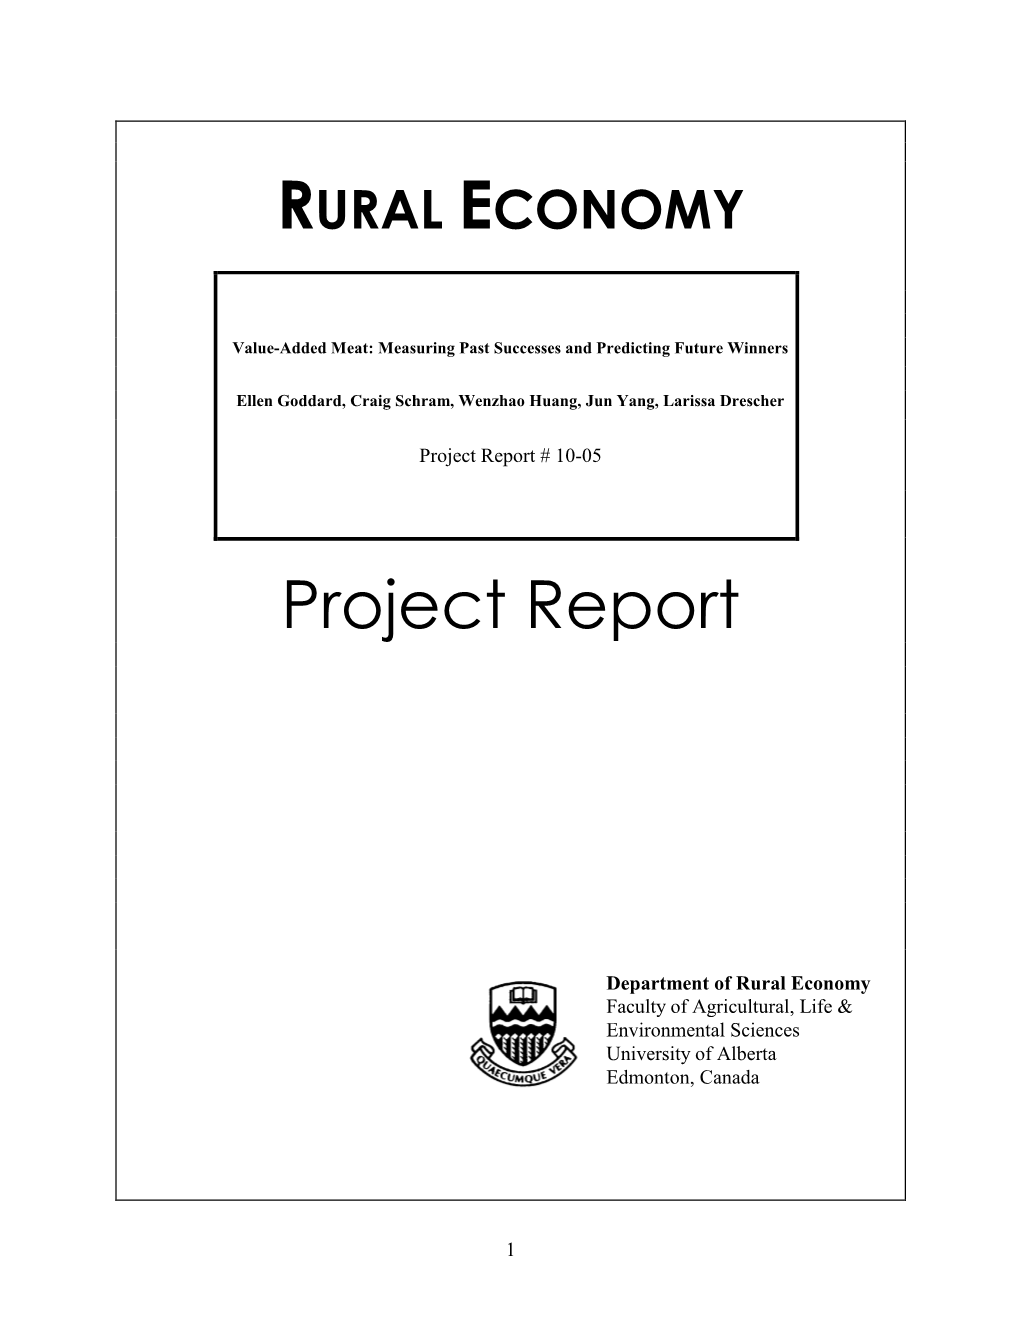 Rural Economy